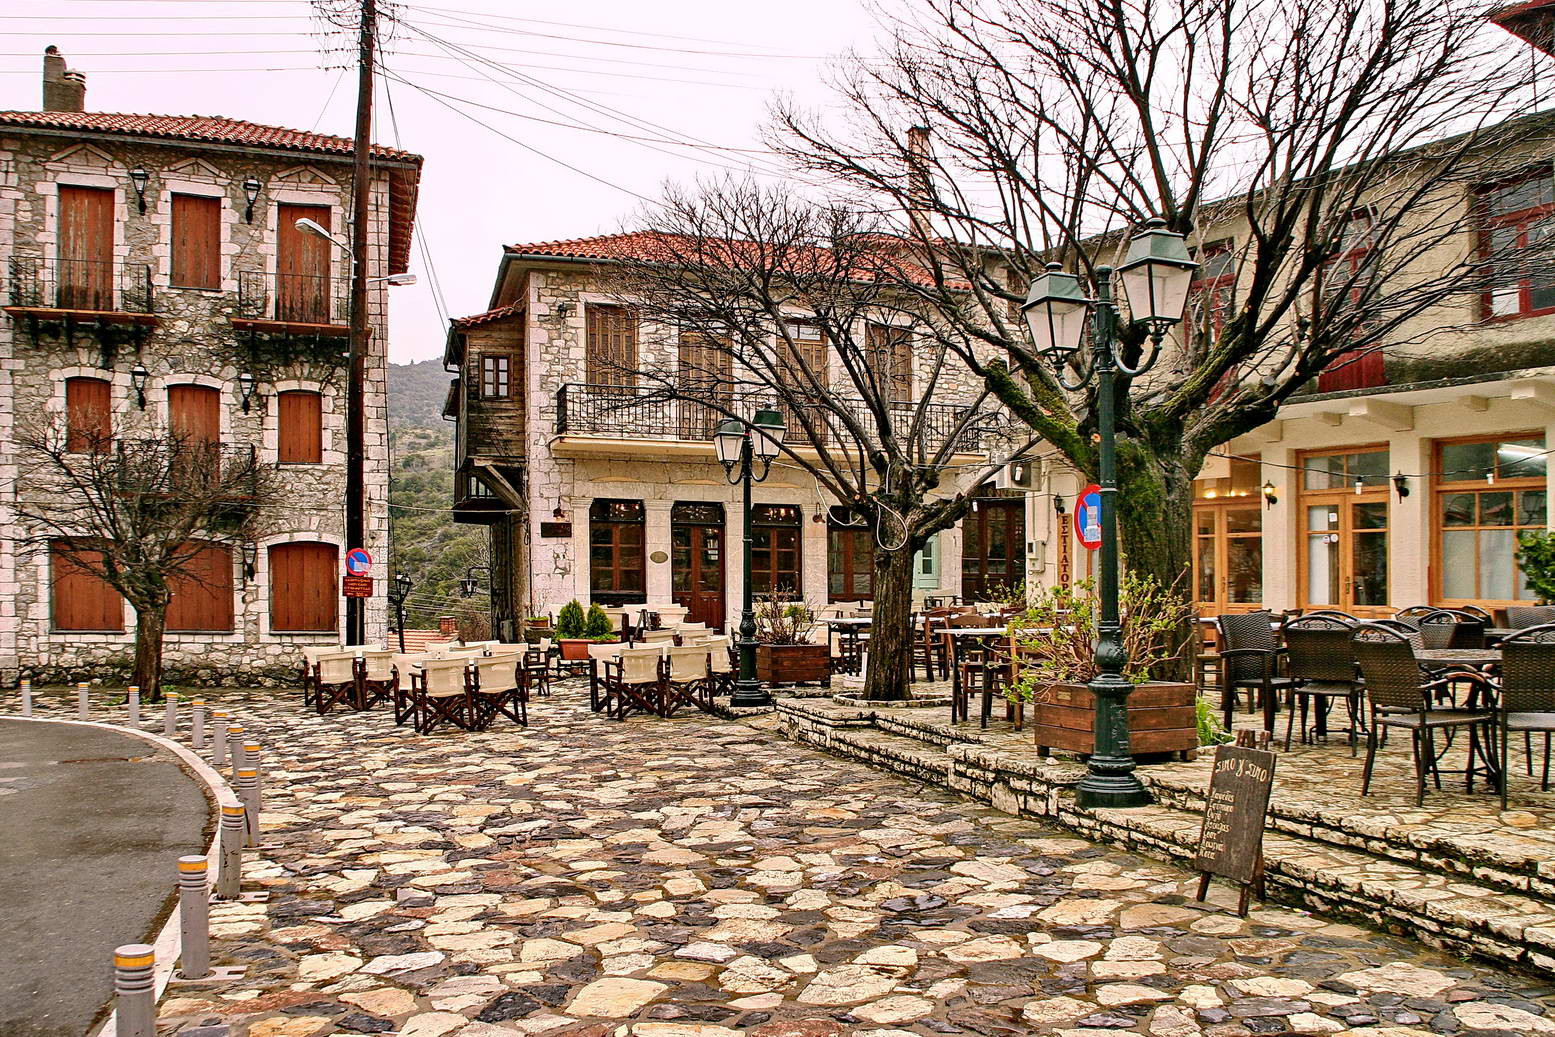 Αυτά είναι τα ομορφότερα ελληνικά χωριά σύμφωνα με το CNN